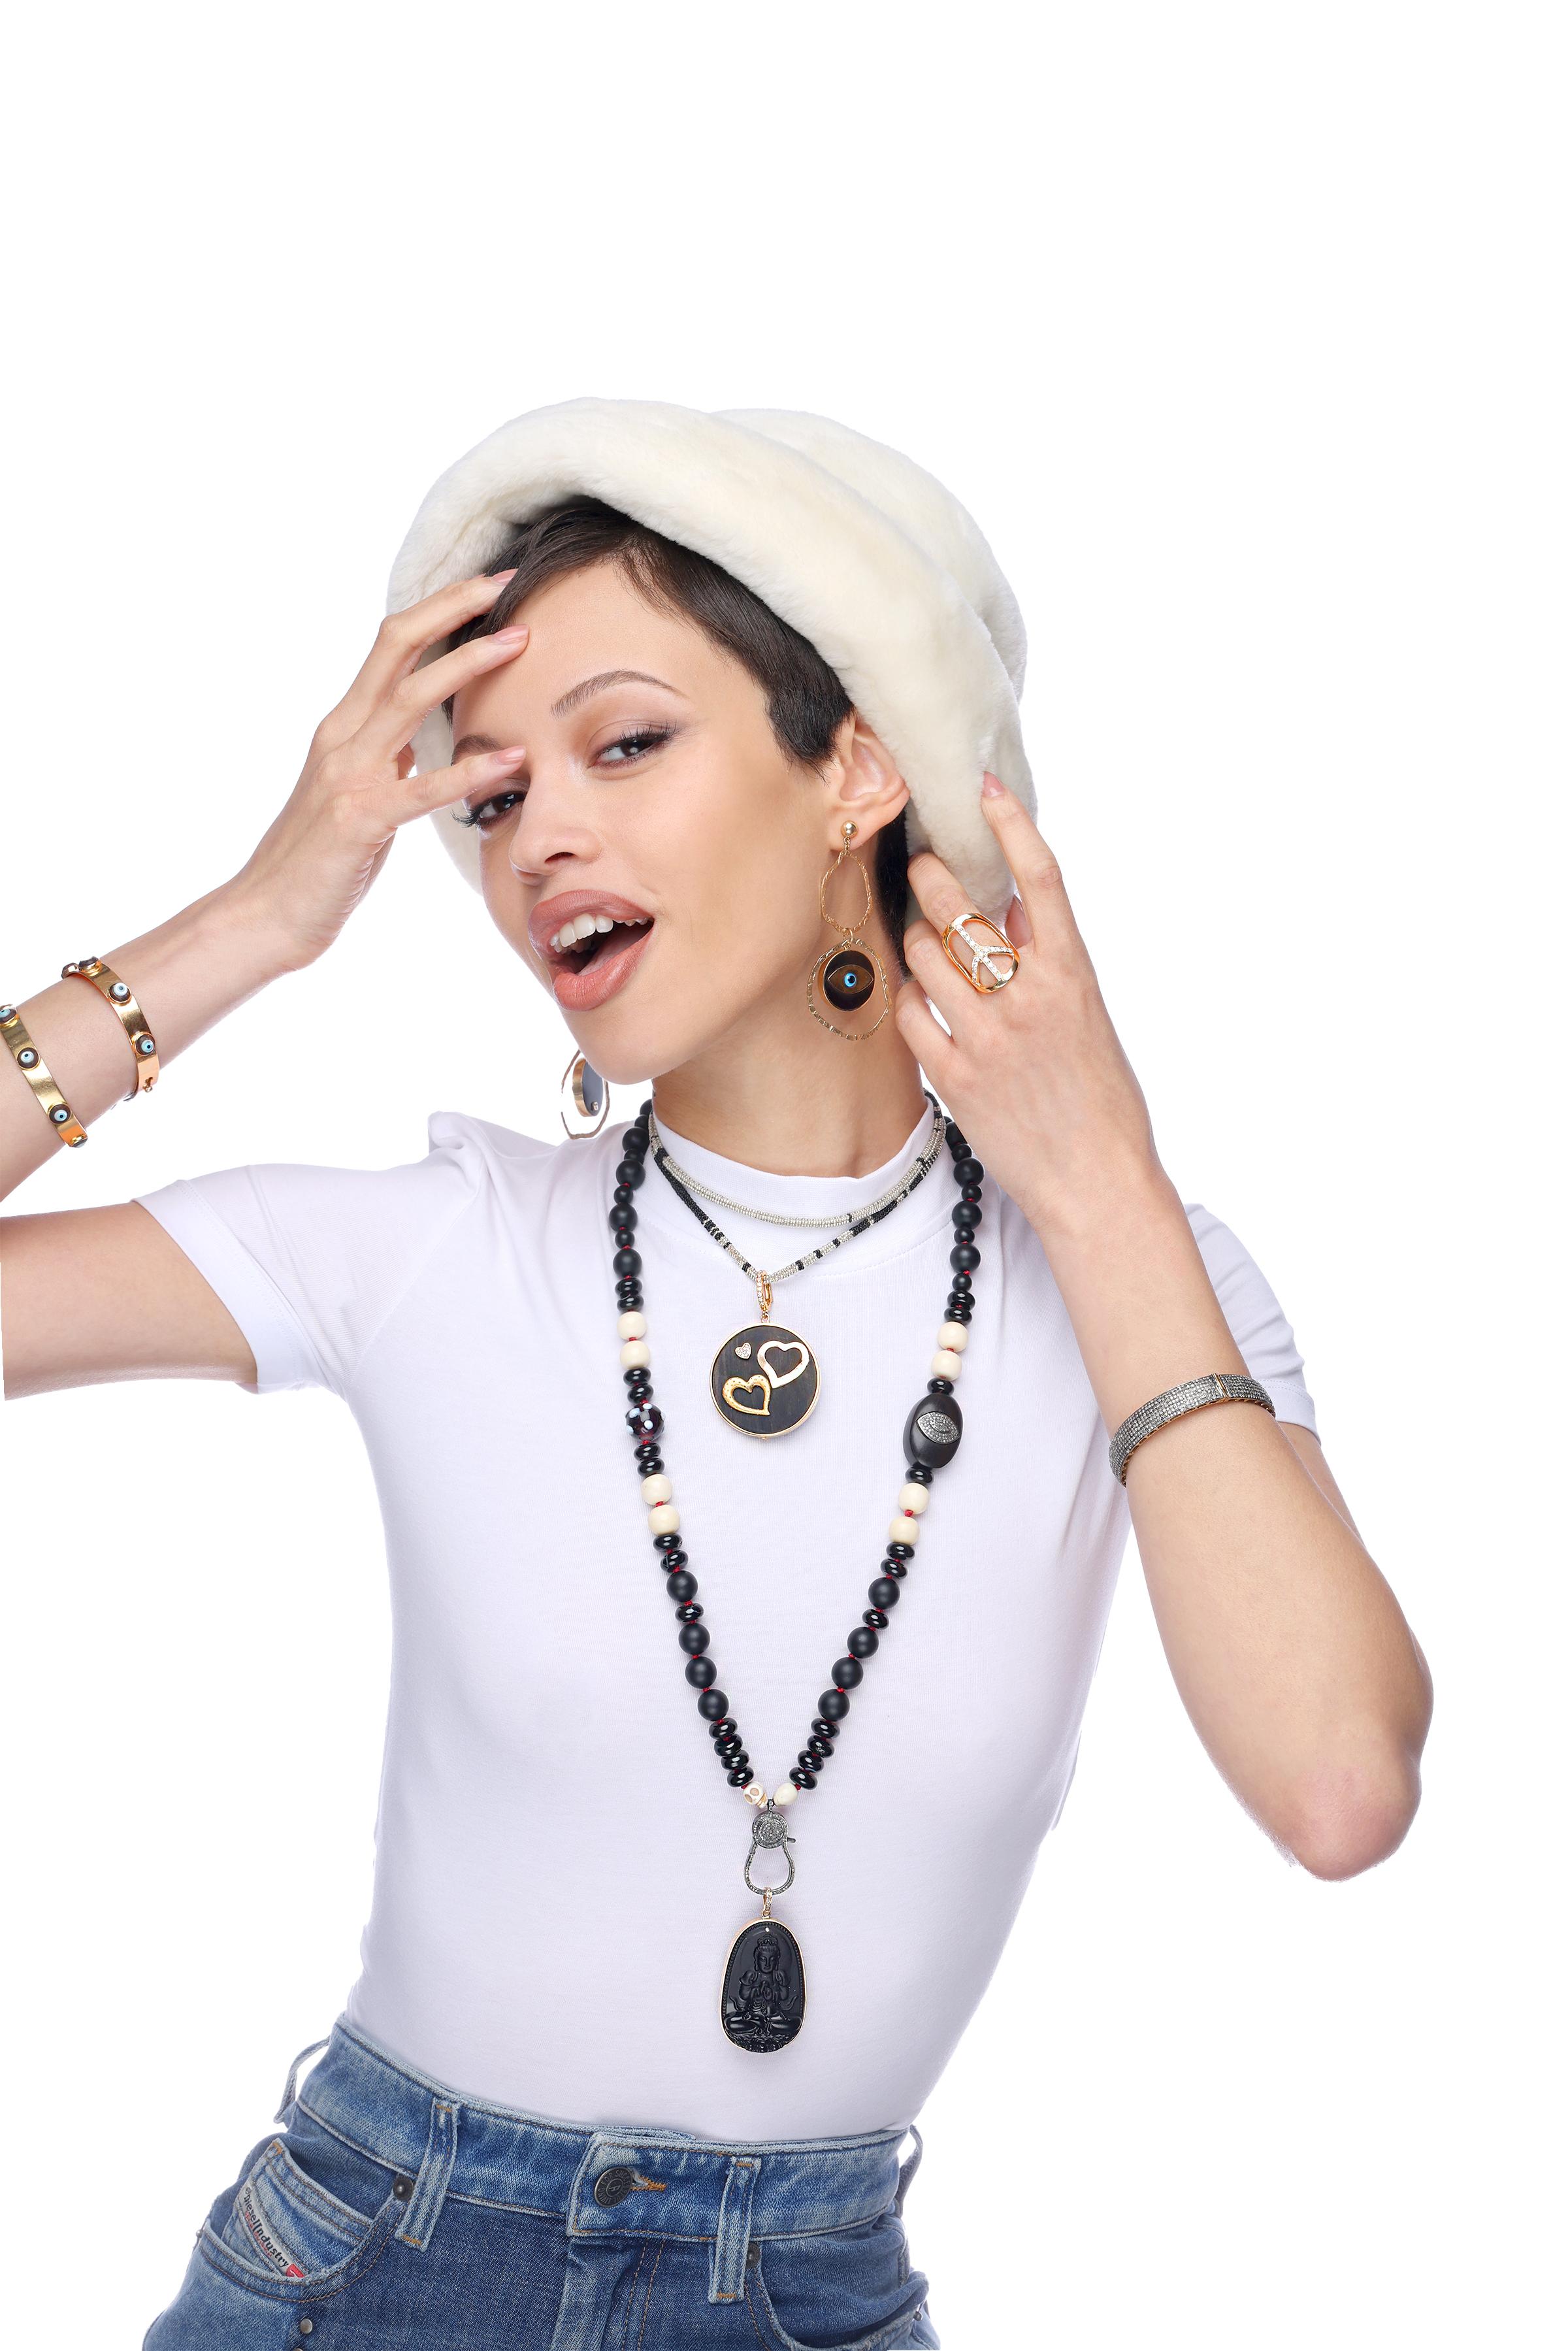 Contemporary Clarissa Bronfman Onyx Diamond Ebony Beaded Necklace & Ebony Ruby Hamsa Pendant For Sale